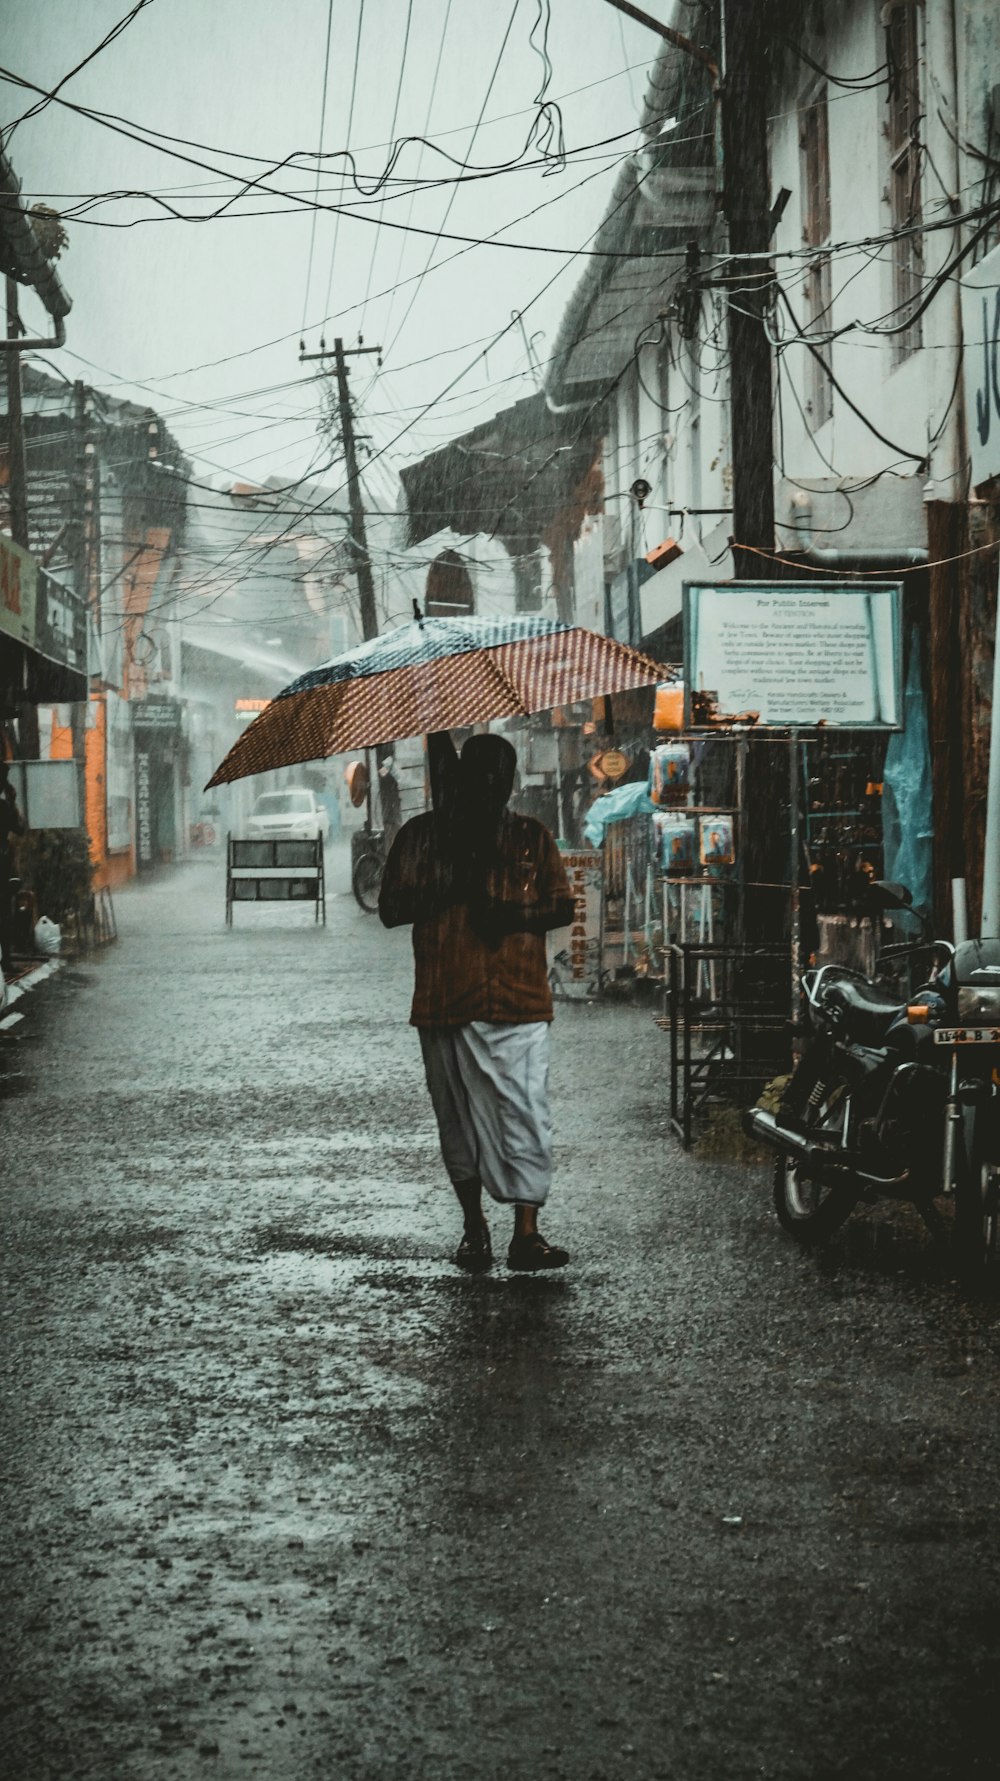 Frau mit Regenschirm im Regen